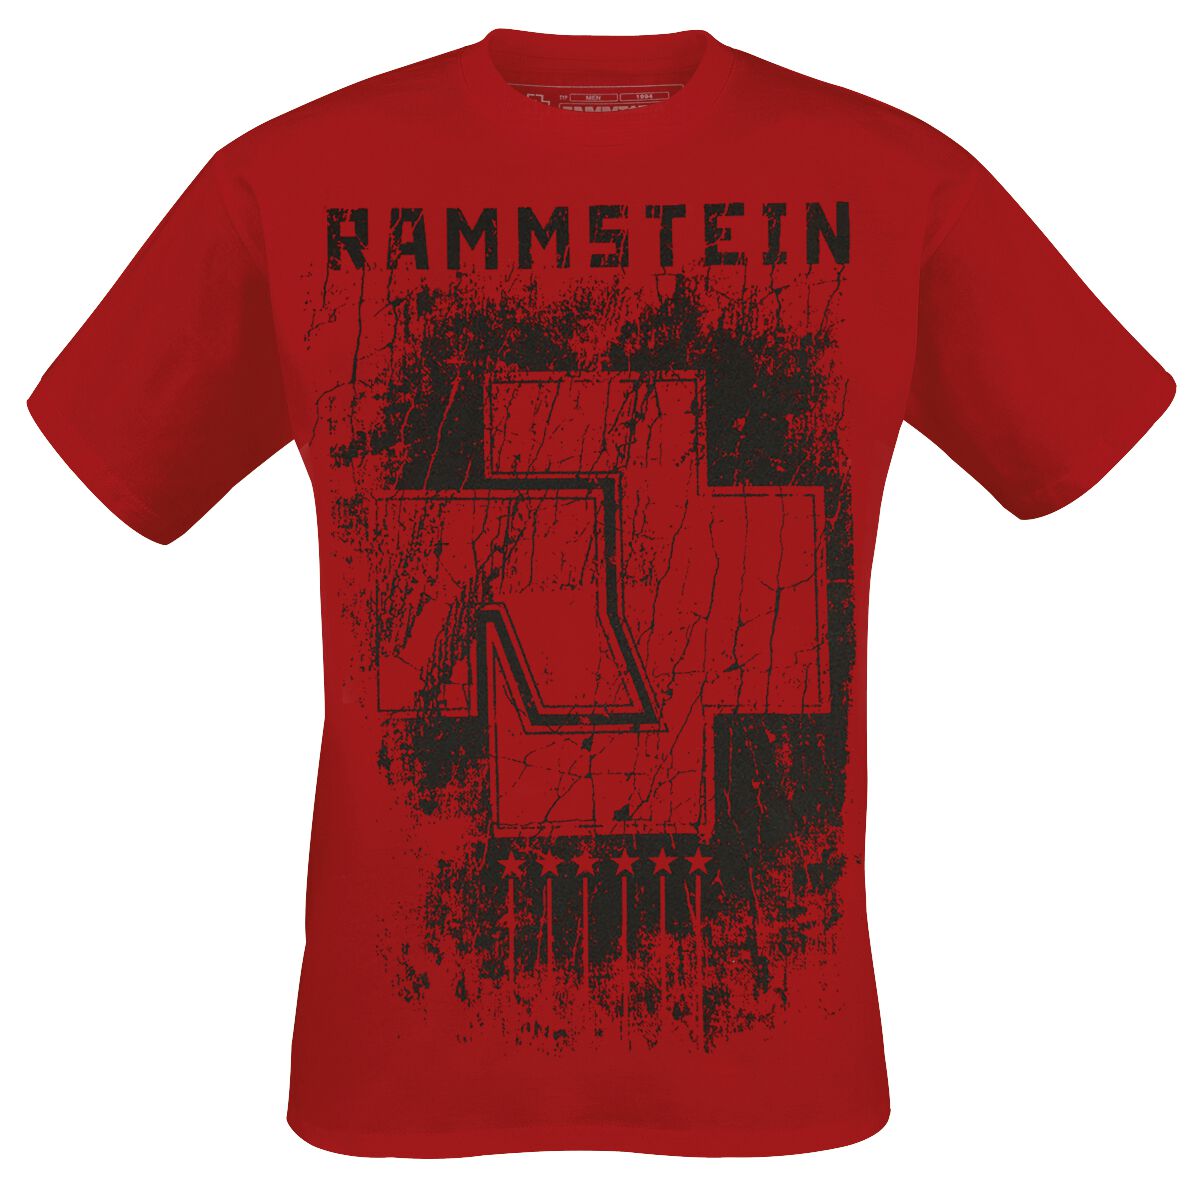 Rammstein T-Shirt - 6 Herzen - S bis XXL - für Männer - Größe L - rot  - Lizenziertes Merchandise!